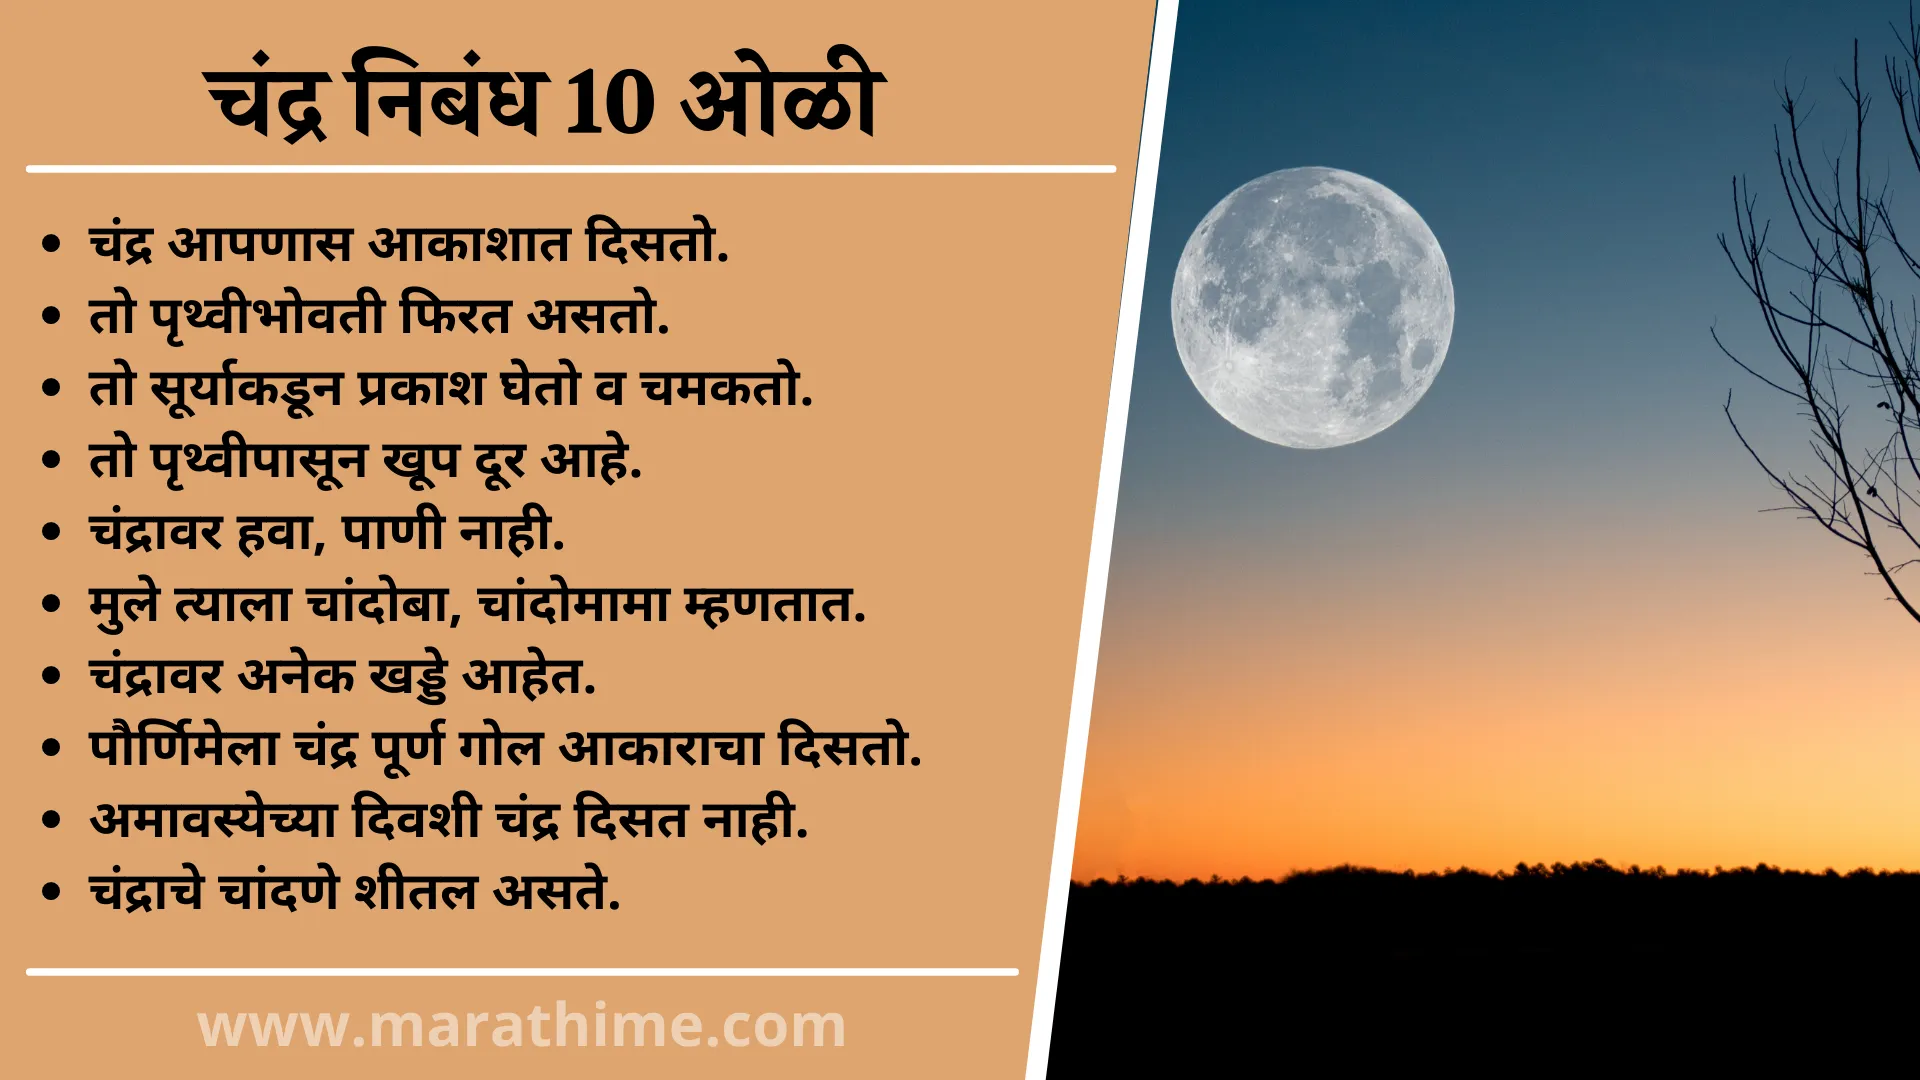 चंद्र निबंध 10 ओळी, 10 Lines On Moon in Marathi